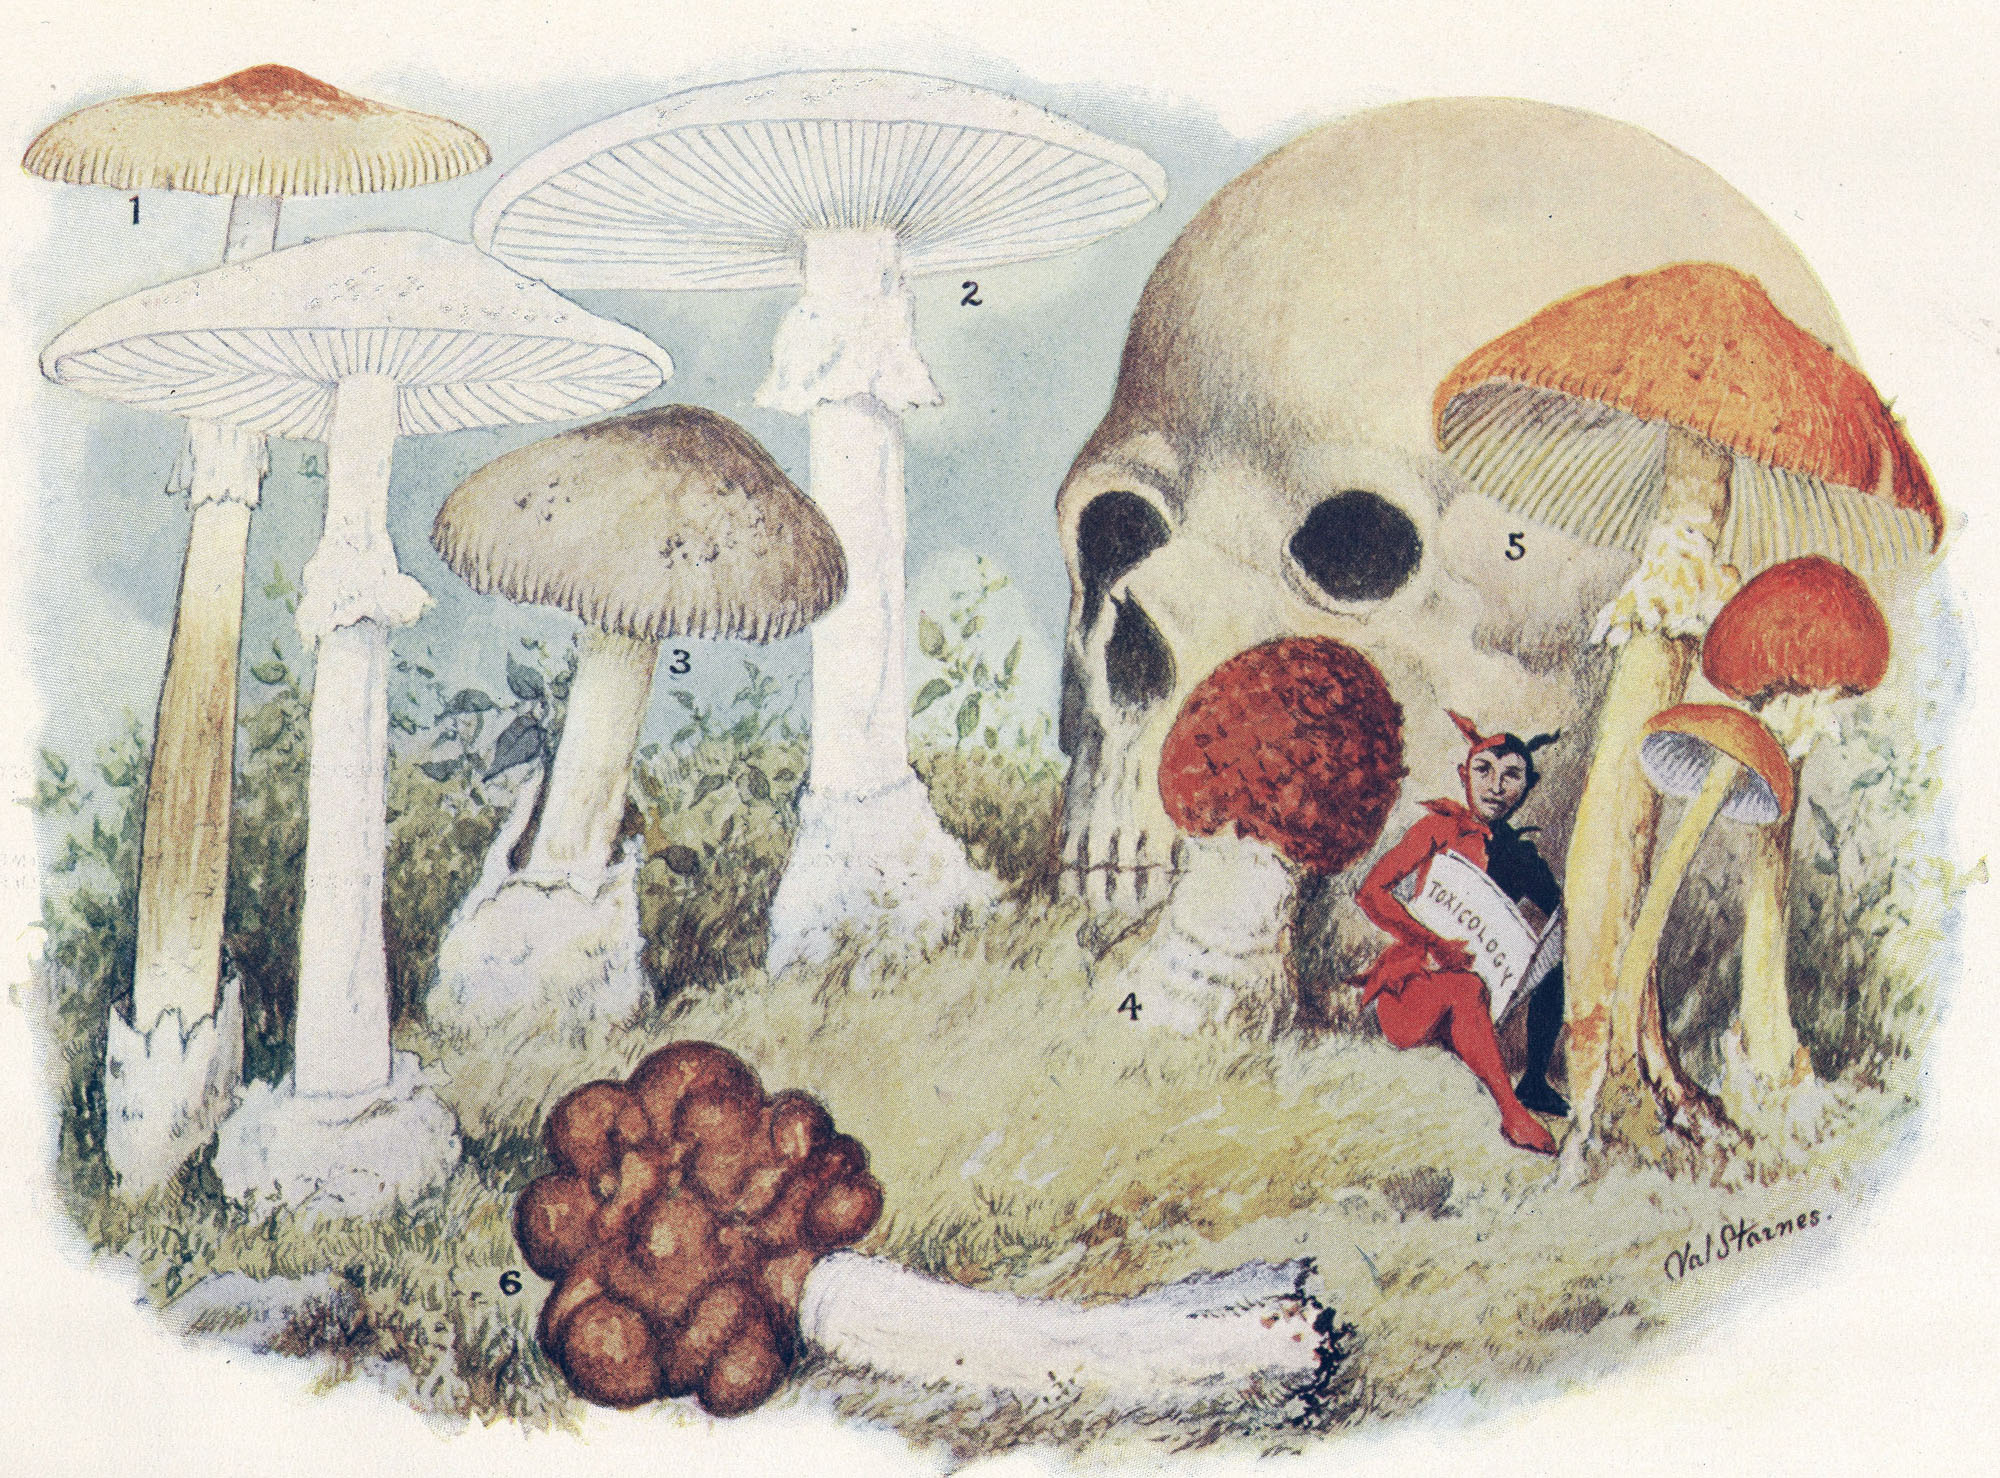 смерть, грибы, токсичны - обои на рабочий стол